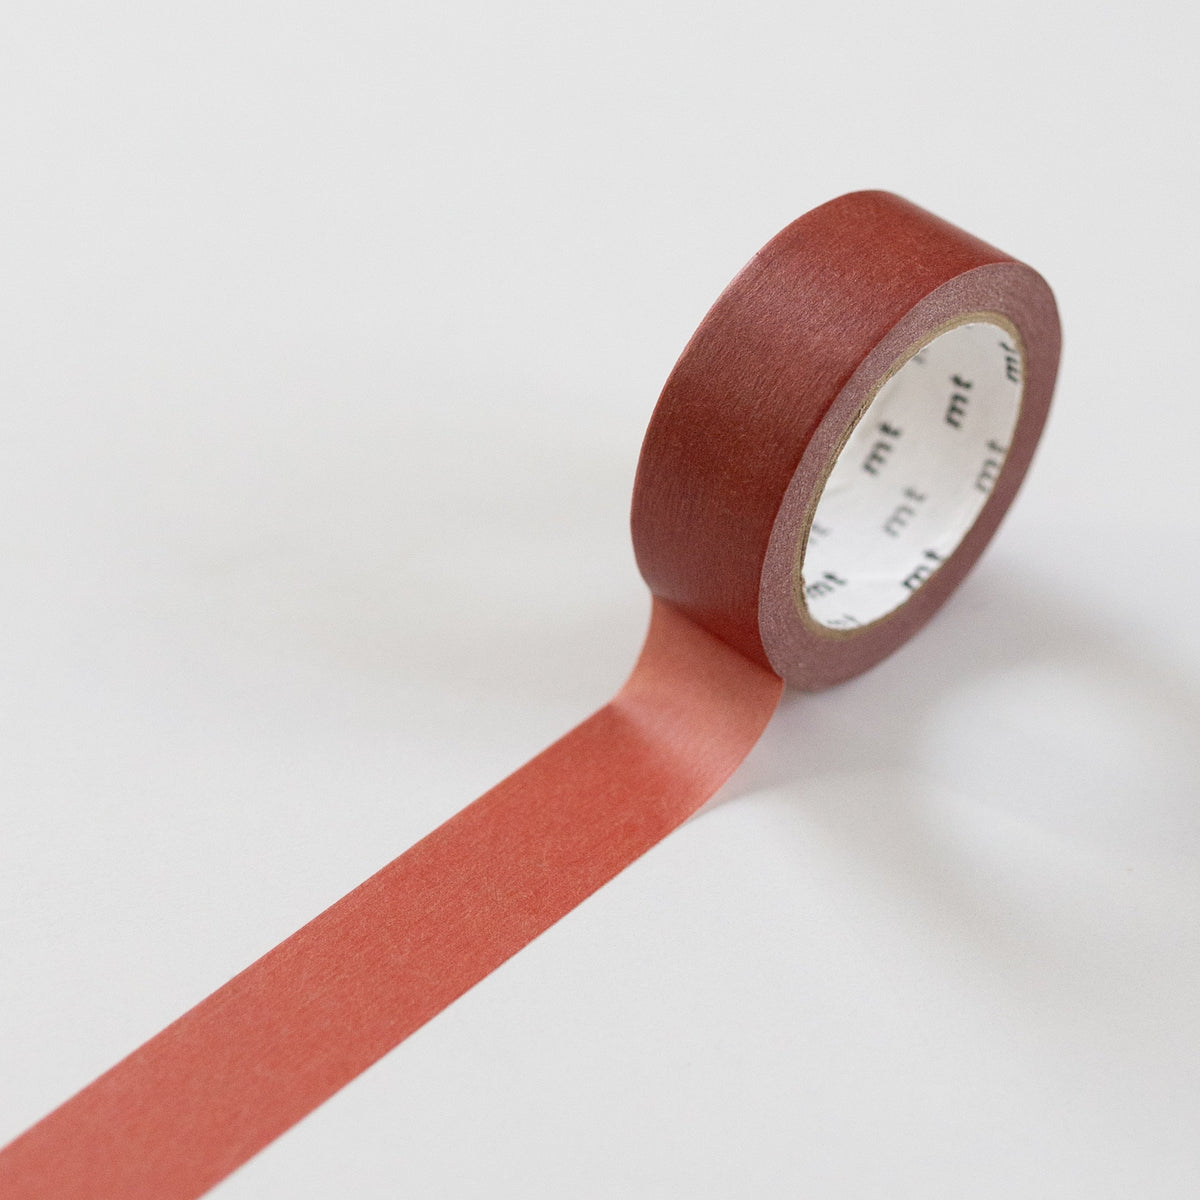 MT Masking tape Basic Reddish Brown